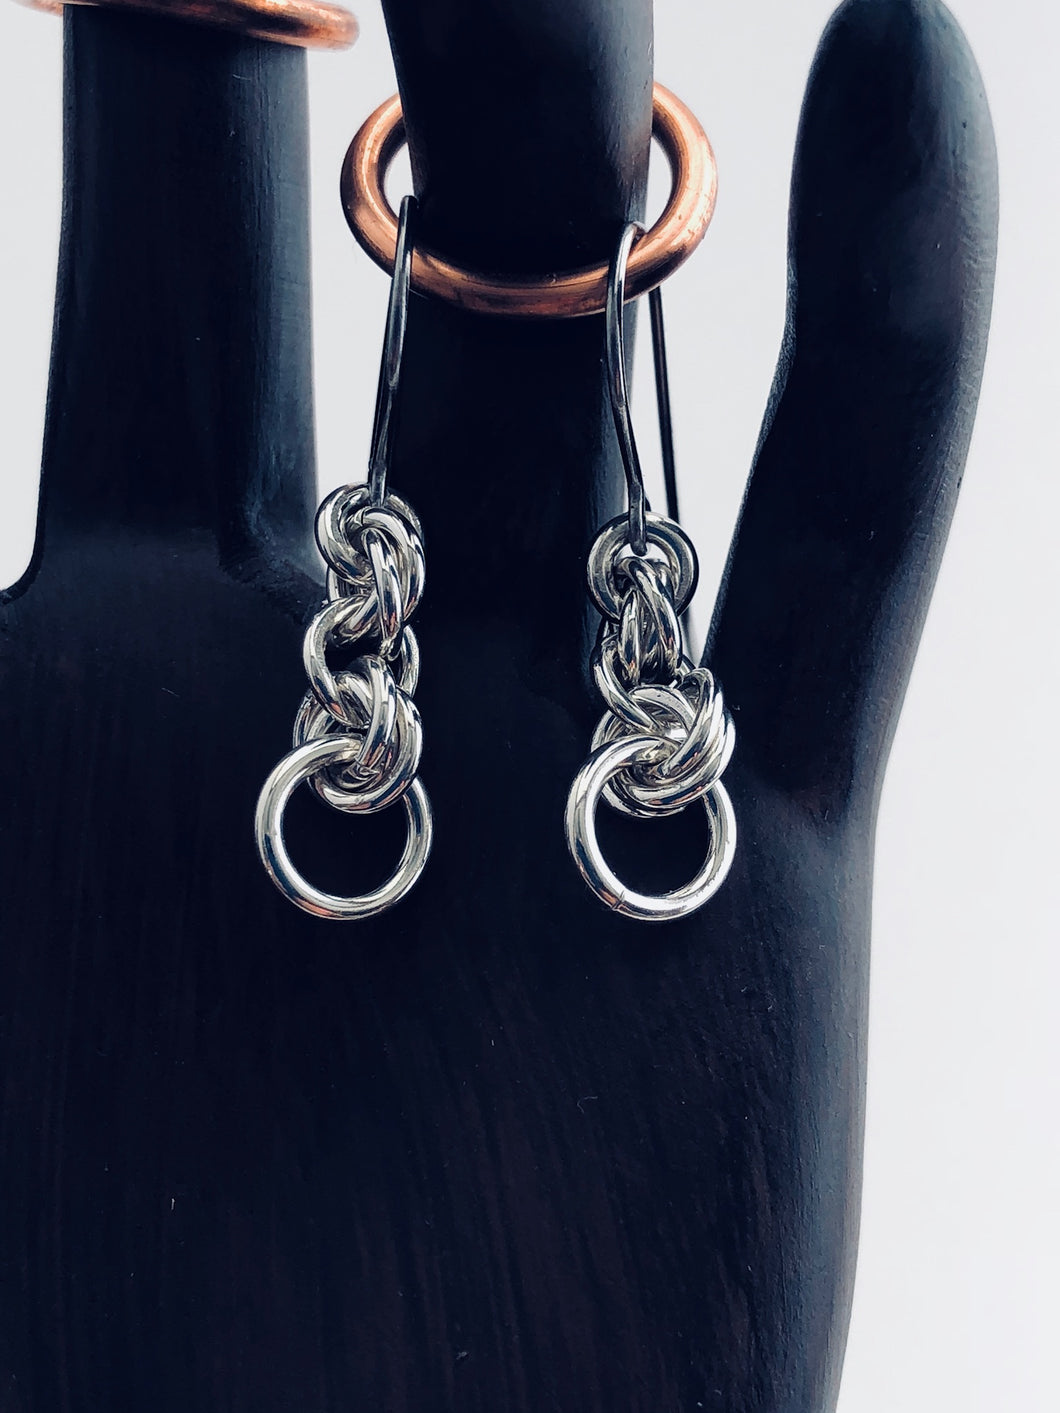 seaXwolf handmade fine jewelry triple twist solid sterling silver chain earrings